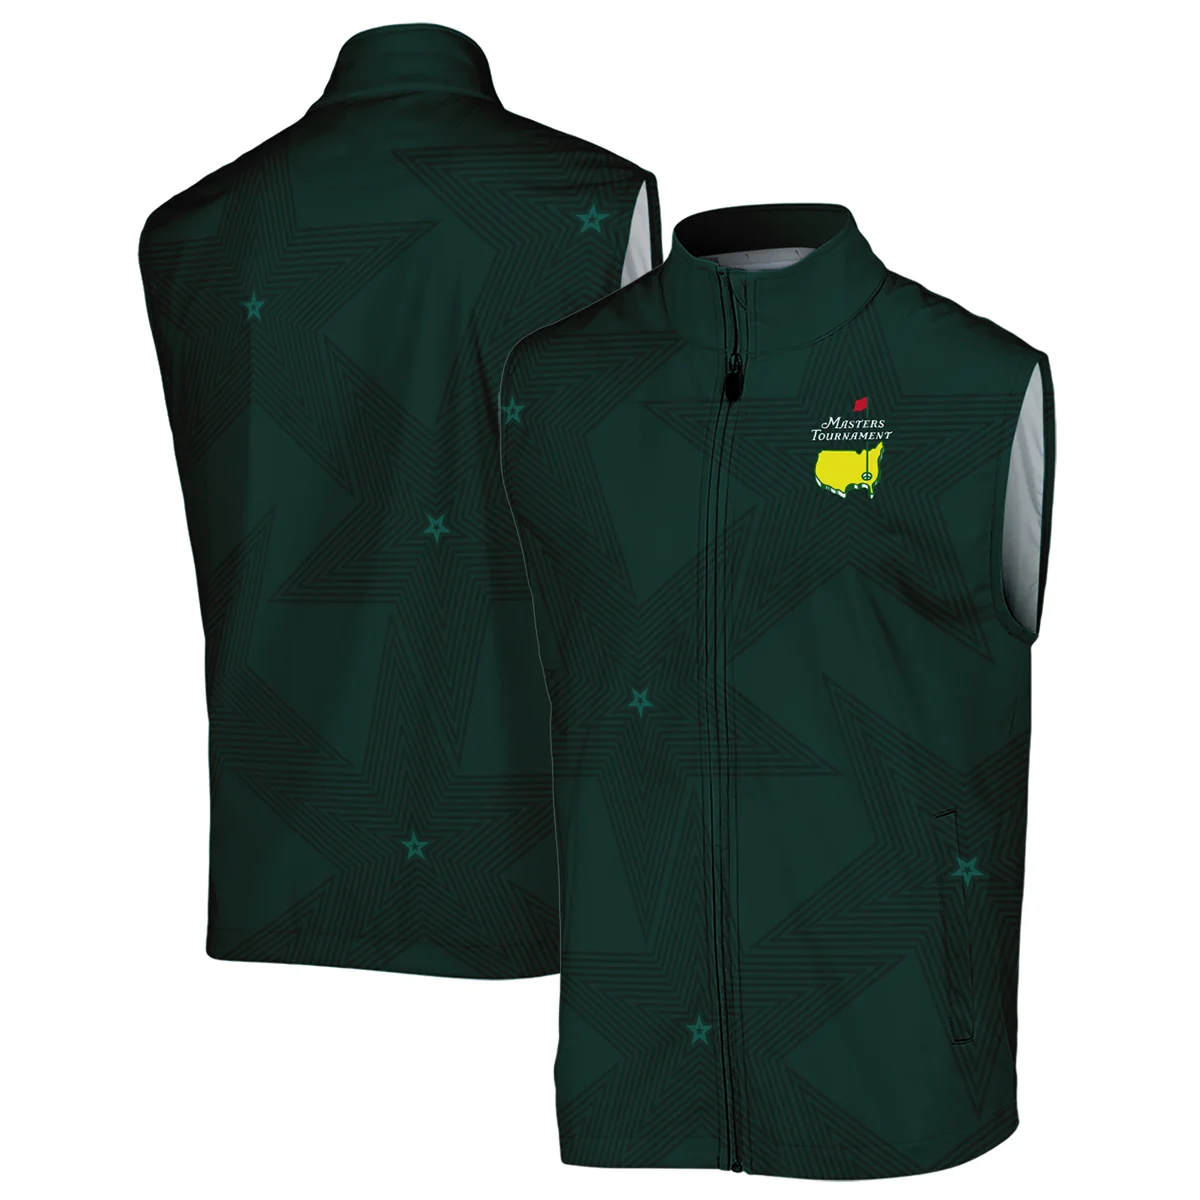 Stars Dark Green Golf Masters Tournament Unisex Sweatshirt Style Classic Sweatshirt